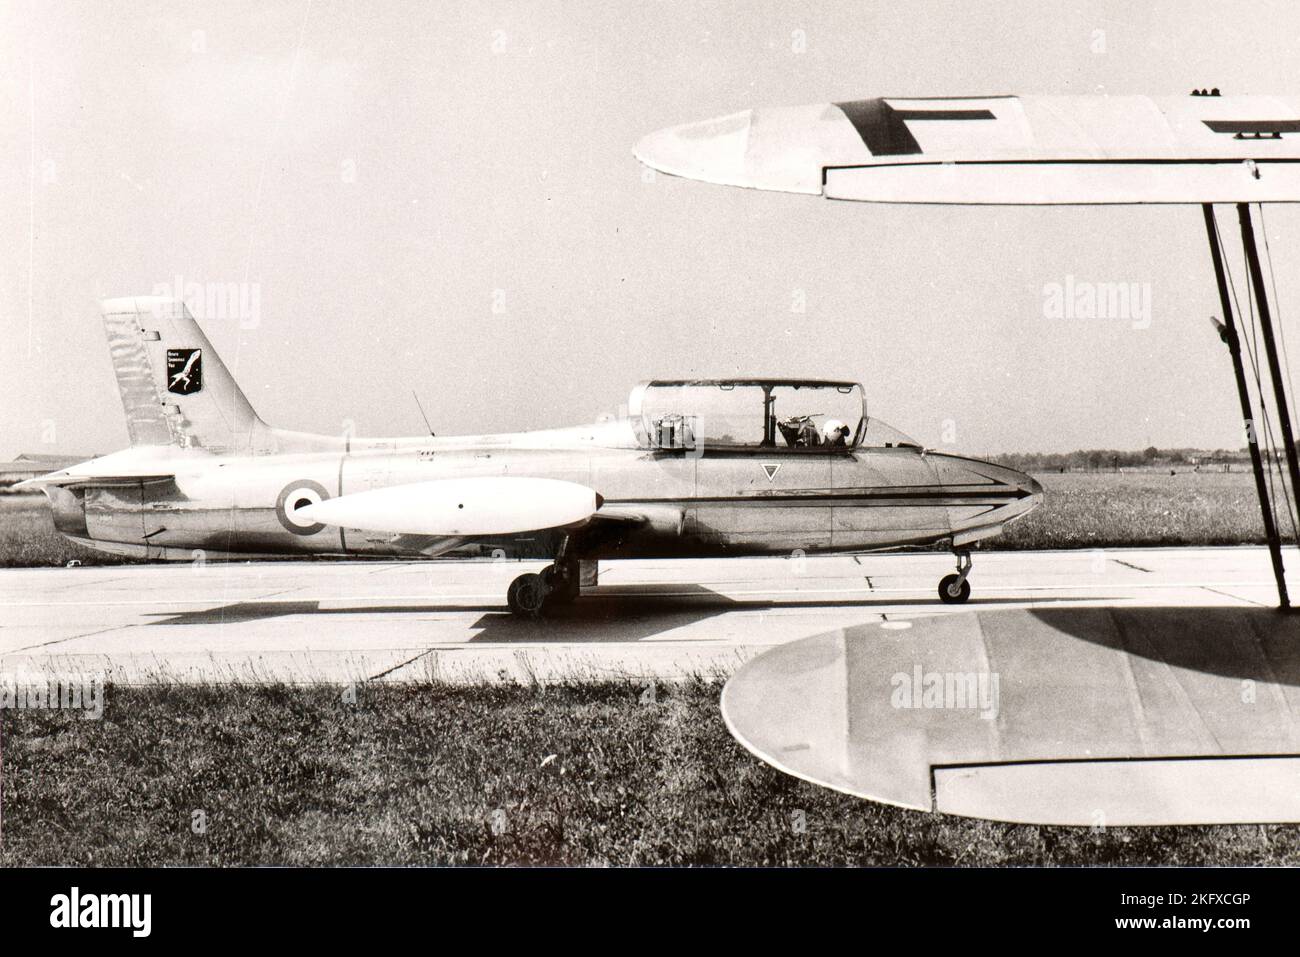 An Italian Aermacchi MB 326 of 'Reparto Sperimentale di Volo', ready for take off at Pratica di Mare military airport in late fifties Stock Photo